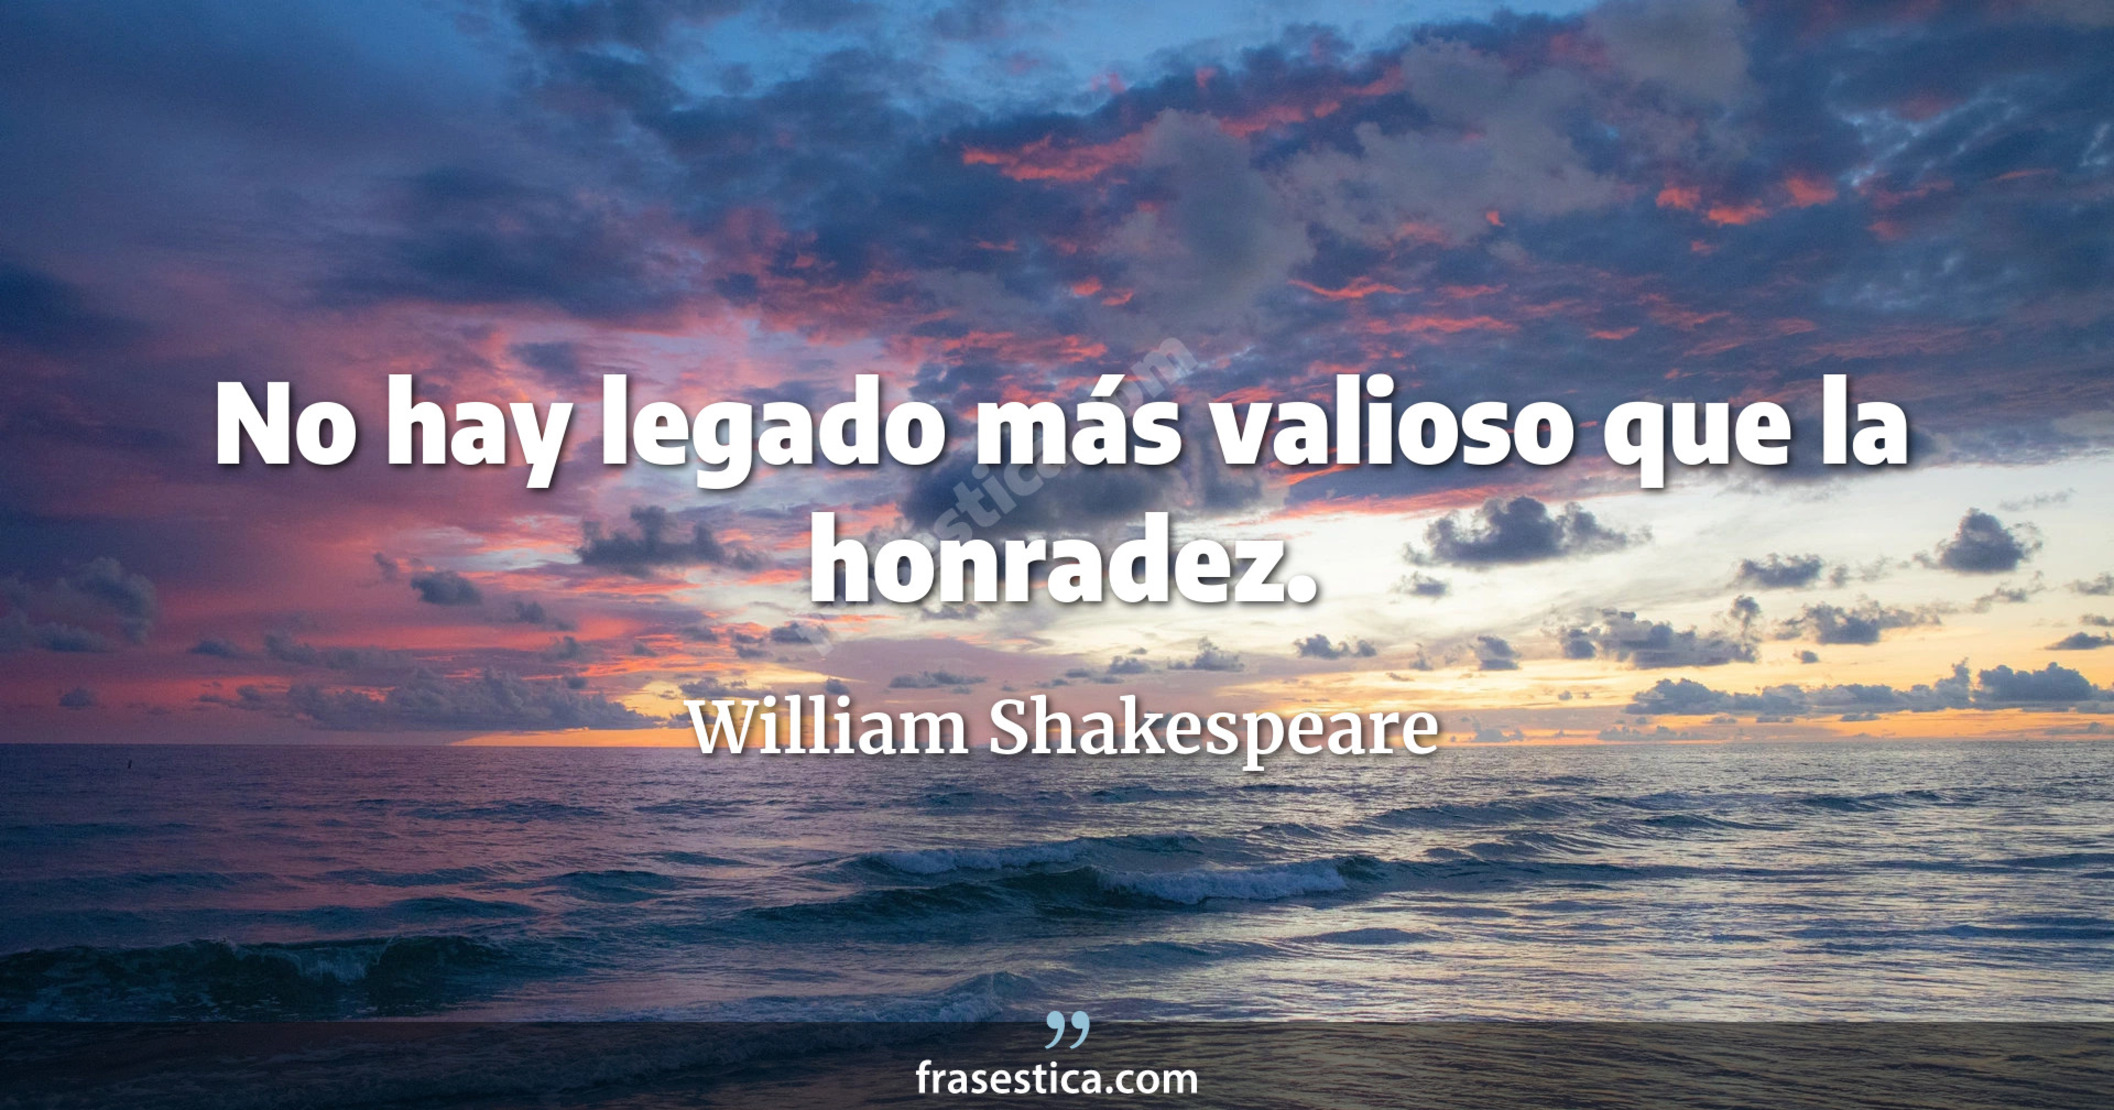 No hay legado más valioso que la honradez. - William Shakespeare